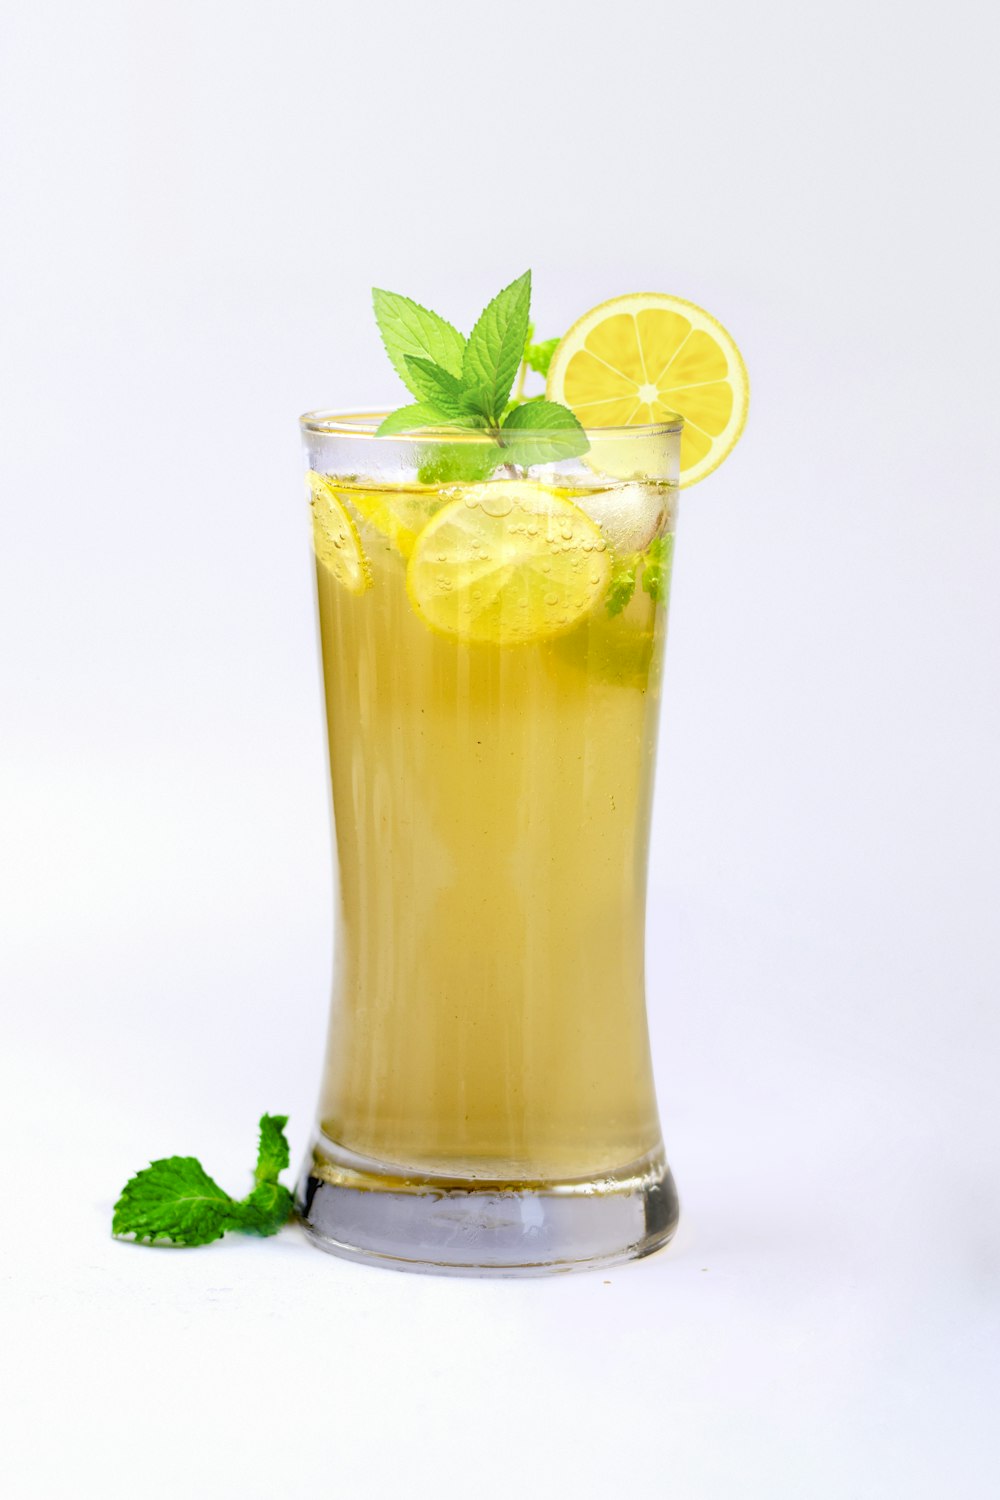 jus de citron dans un verre à la menthe